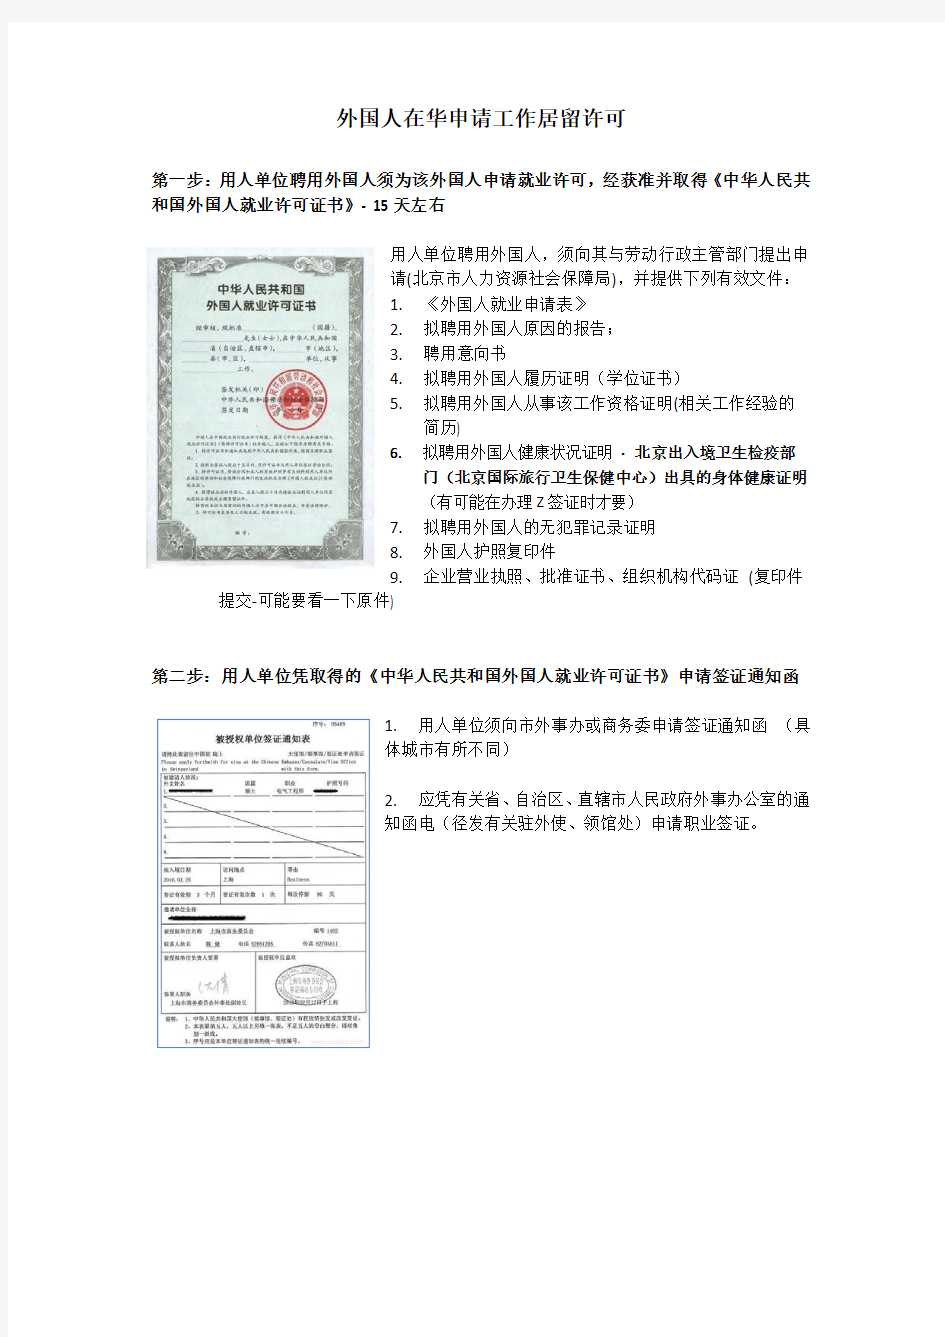 外国人在华申请工作居留许可